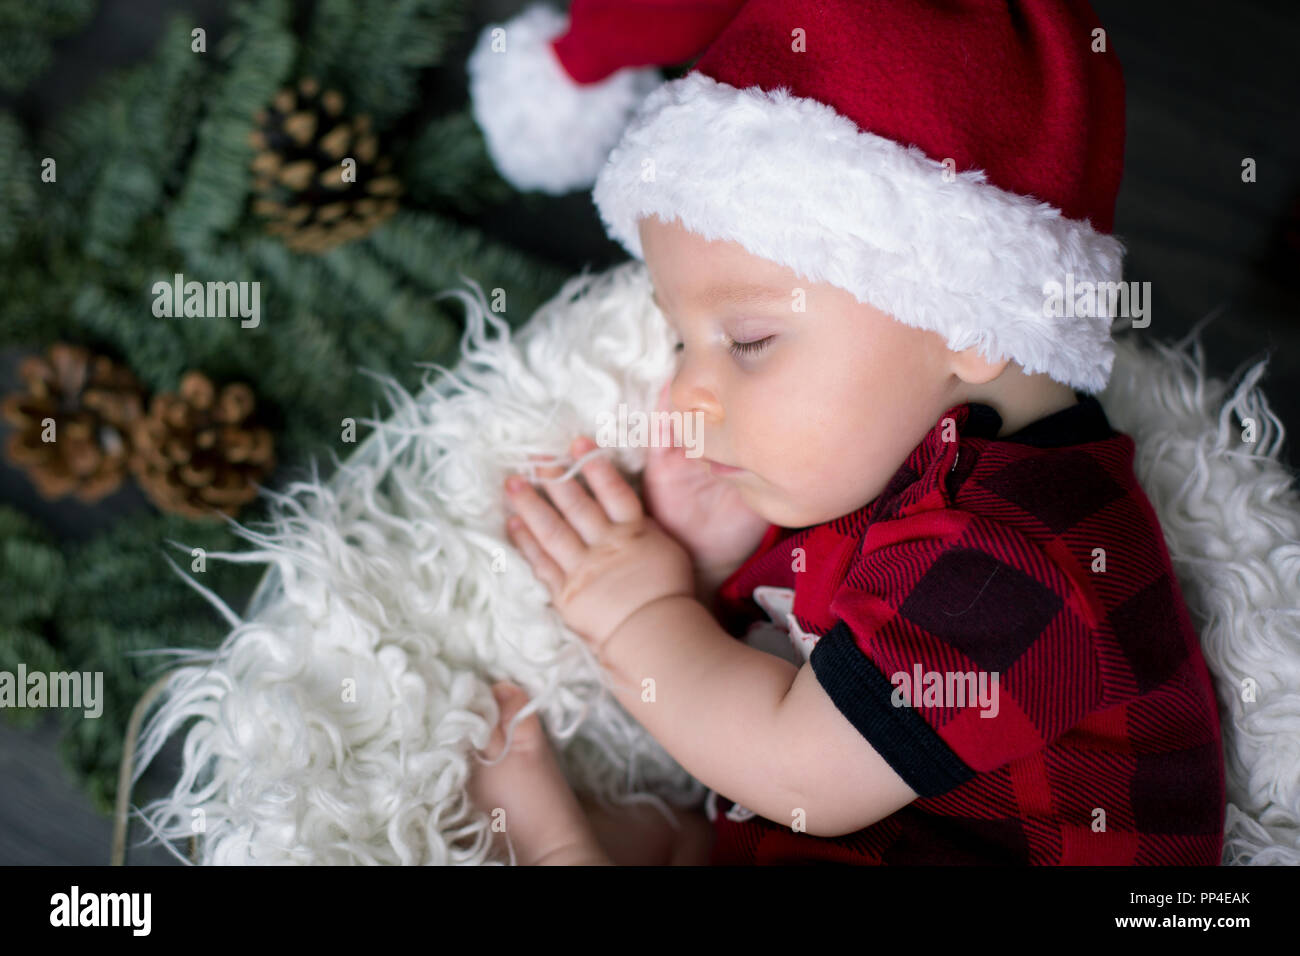 Little Baby Boy mit Weihnachten Kleidung, im Korb schlafen mit Weihnachten  Dekoration um ihn herum Stockfotografie - Alamy